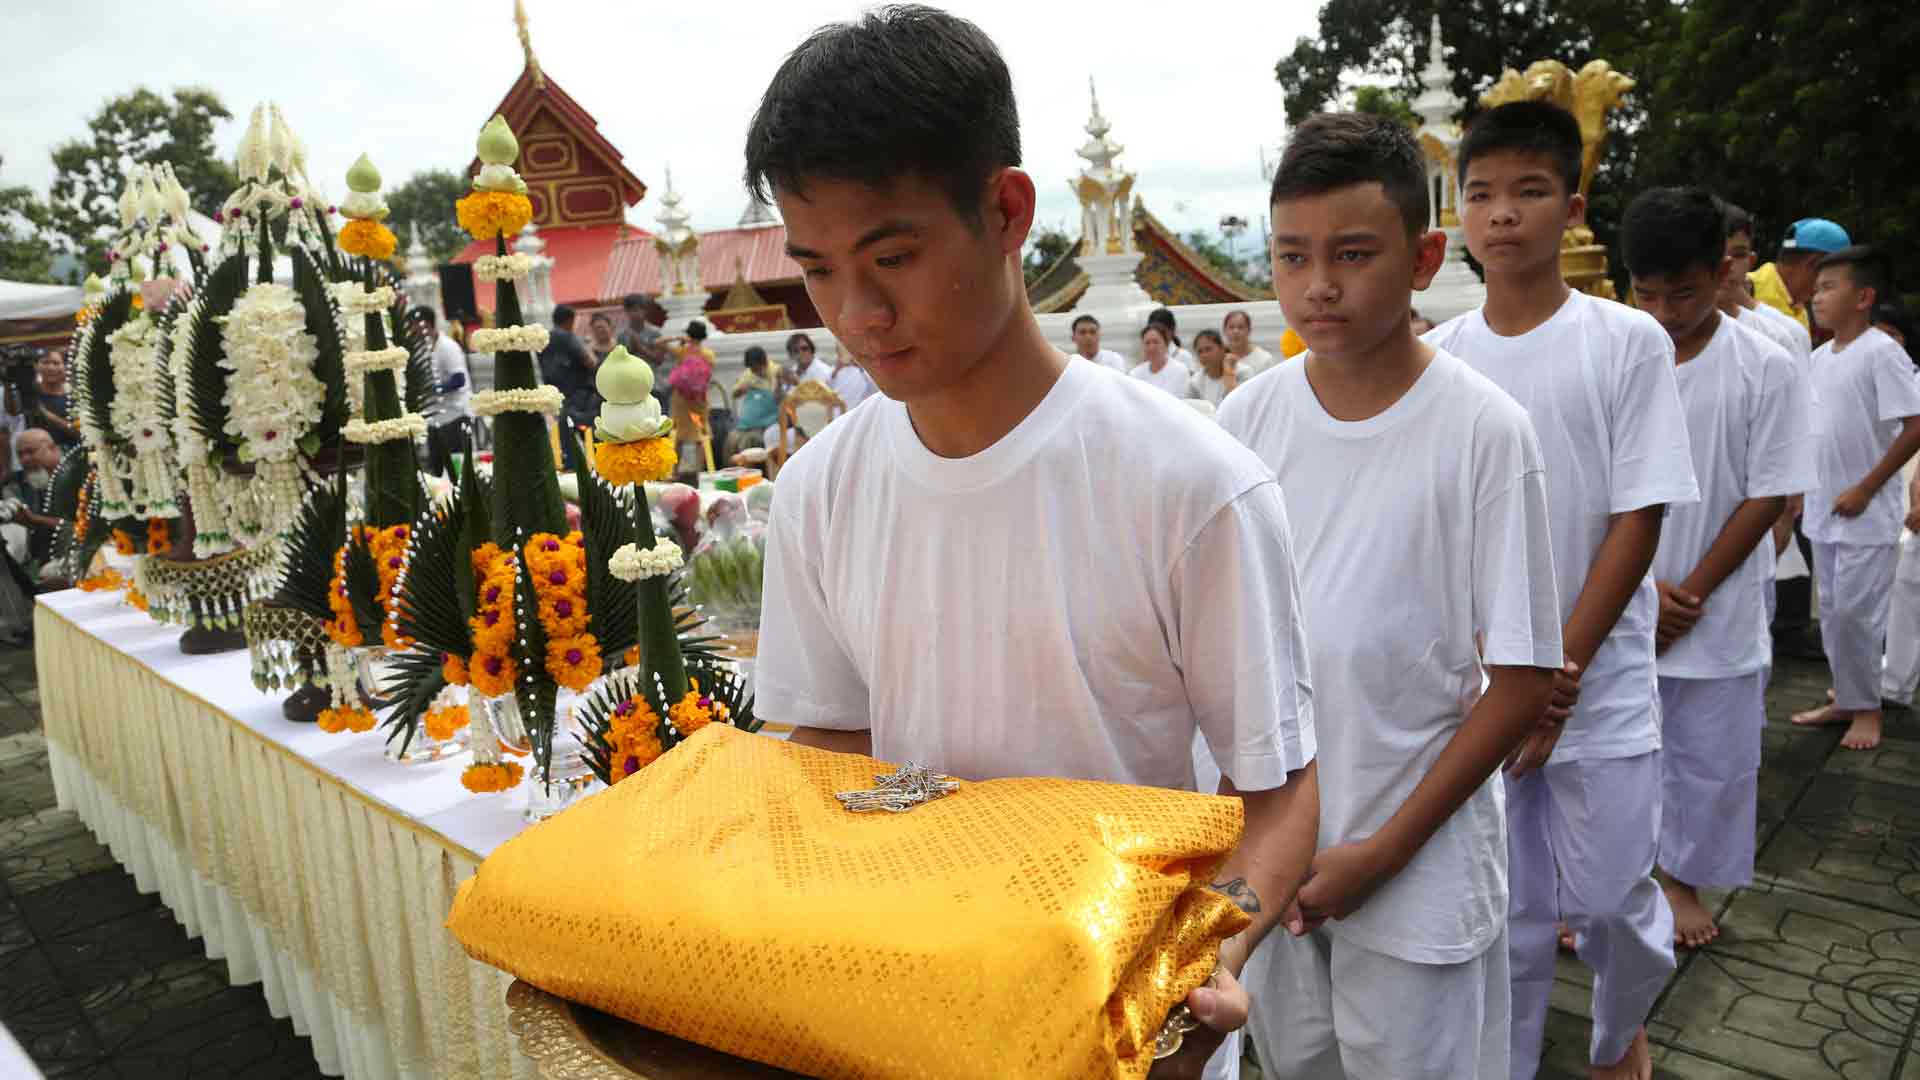 Los niños tailandeses rescatados inician una ceremonia para convertirse en monjes budistas